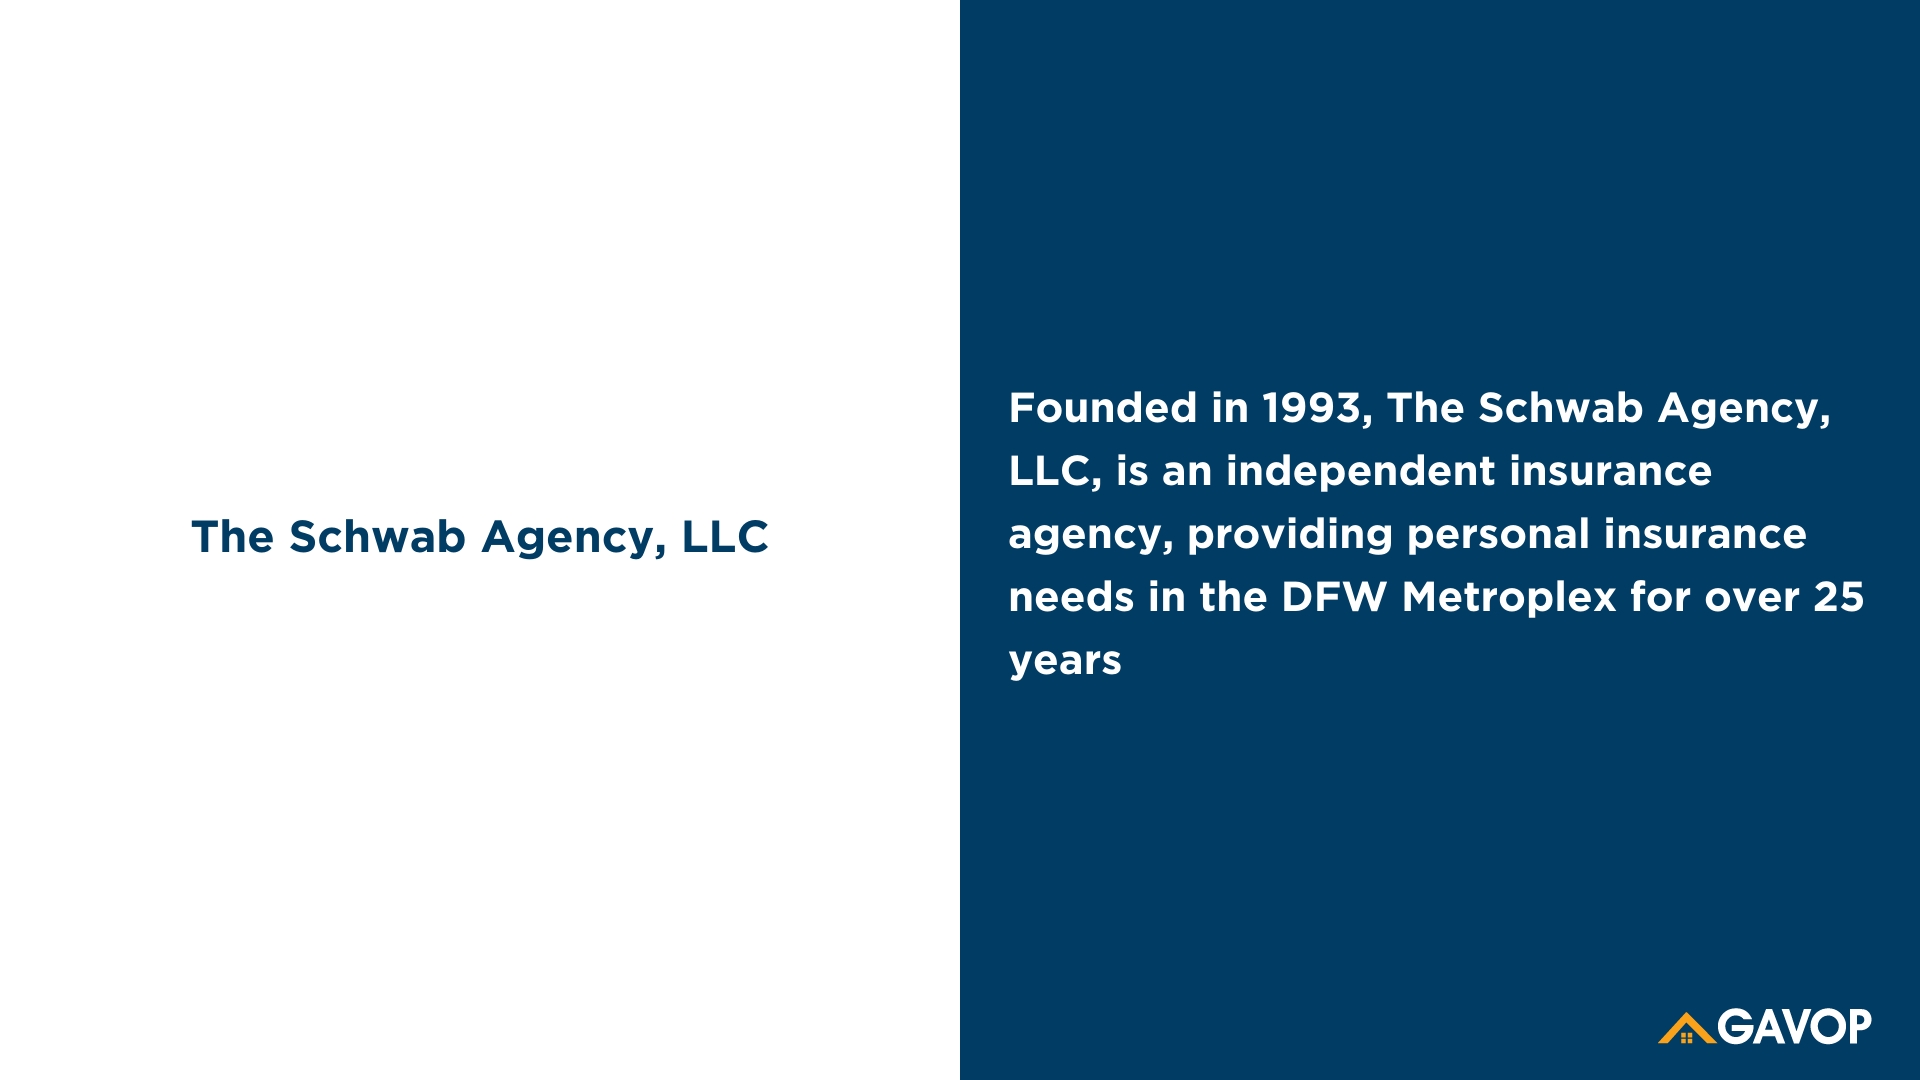 The Schwab Agency, LLC